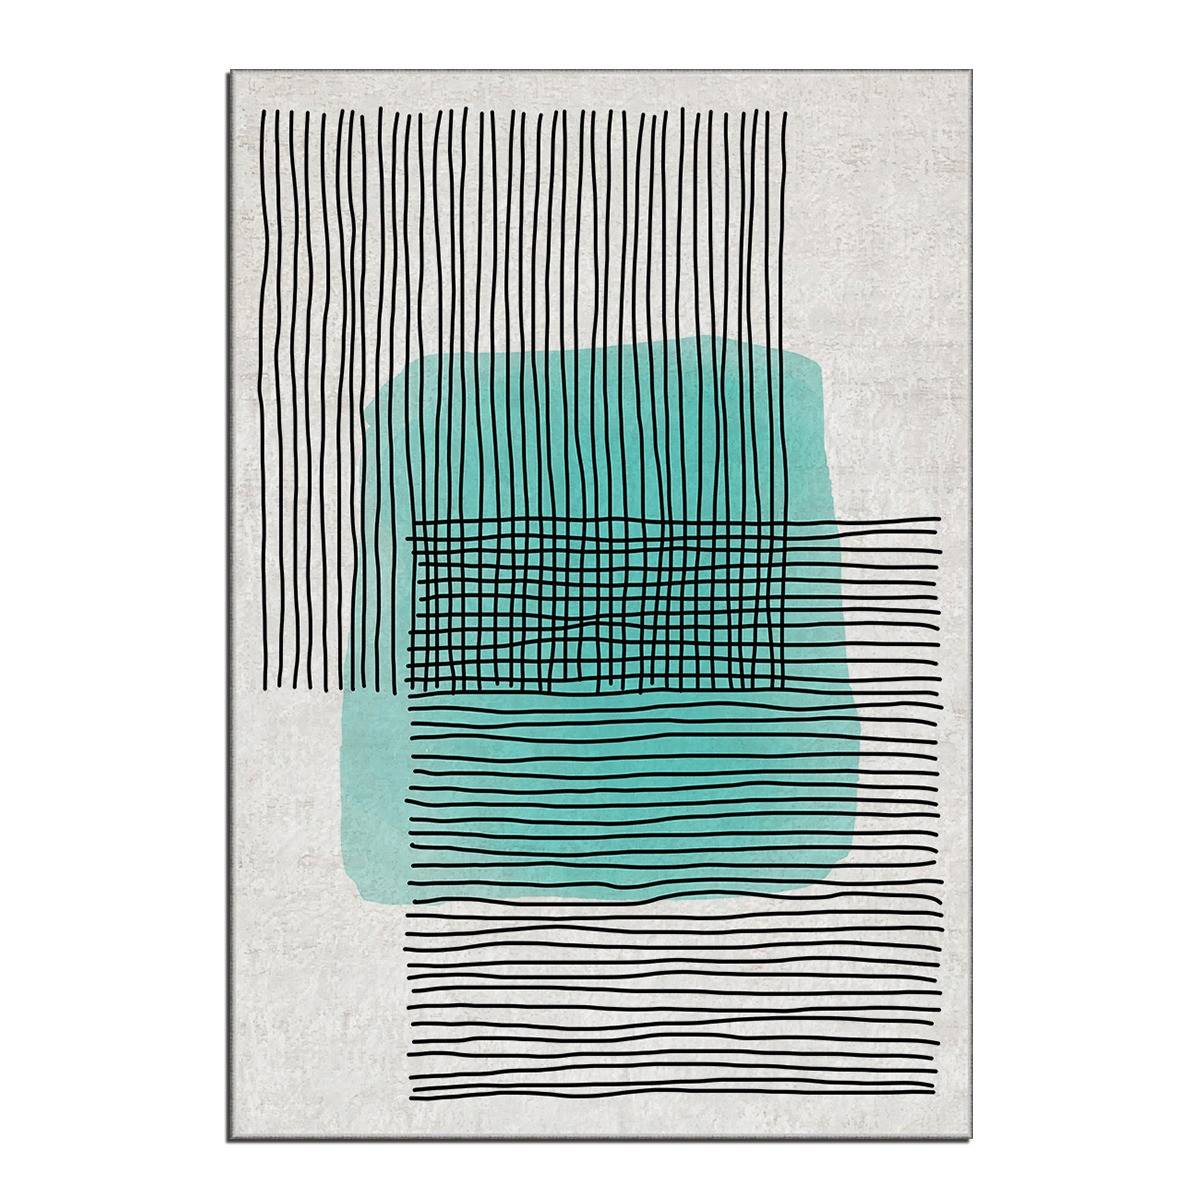 Tapijt Eben 100x140cm Abstract patroon lijnen Zwart en Groen vlek